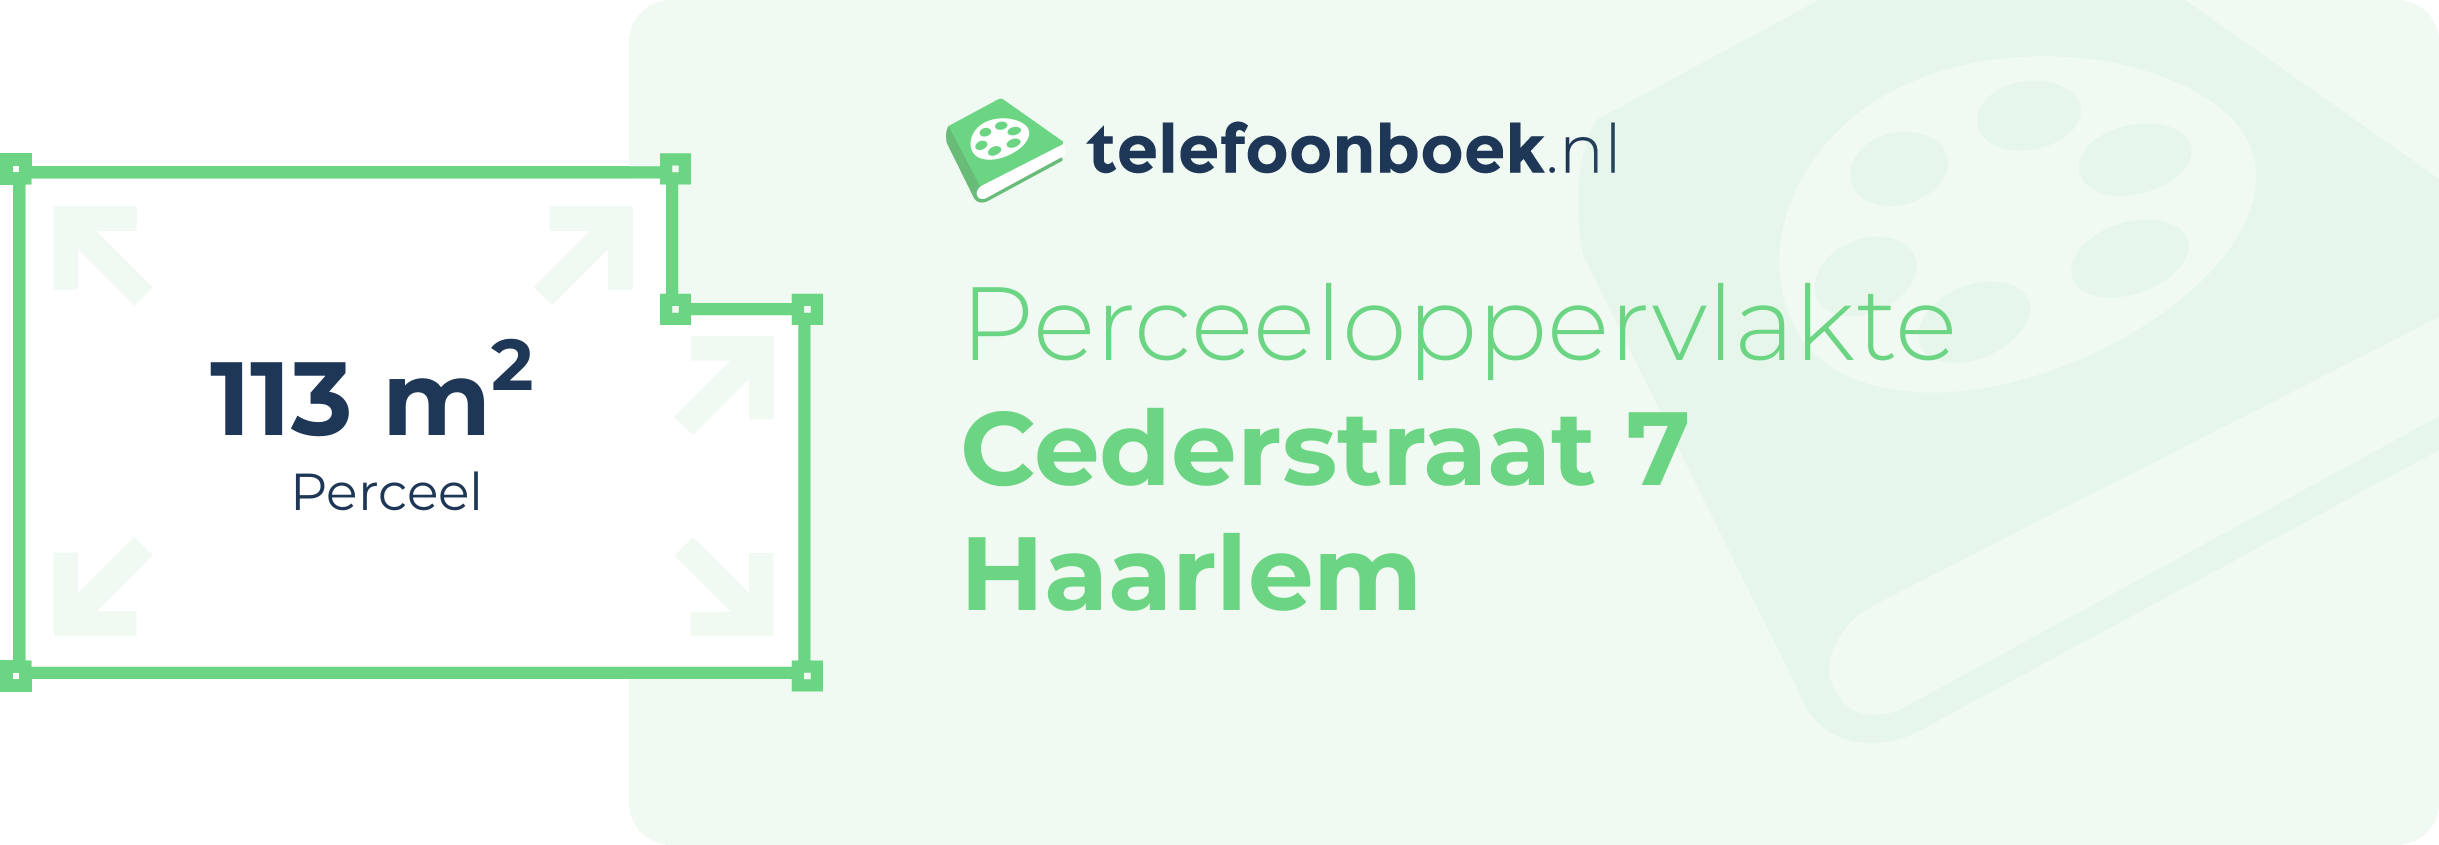 Perceeloppervlakte Cederstraat 7 Haarlem